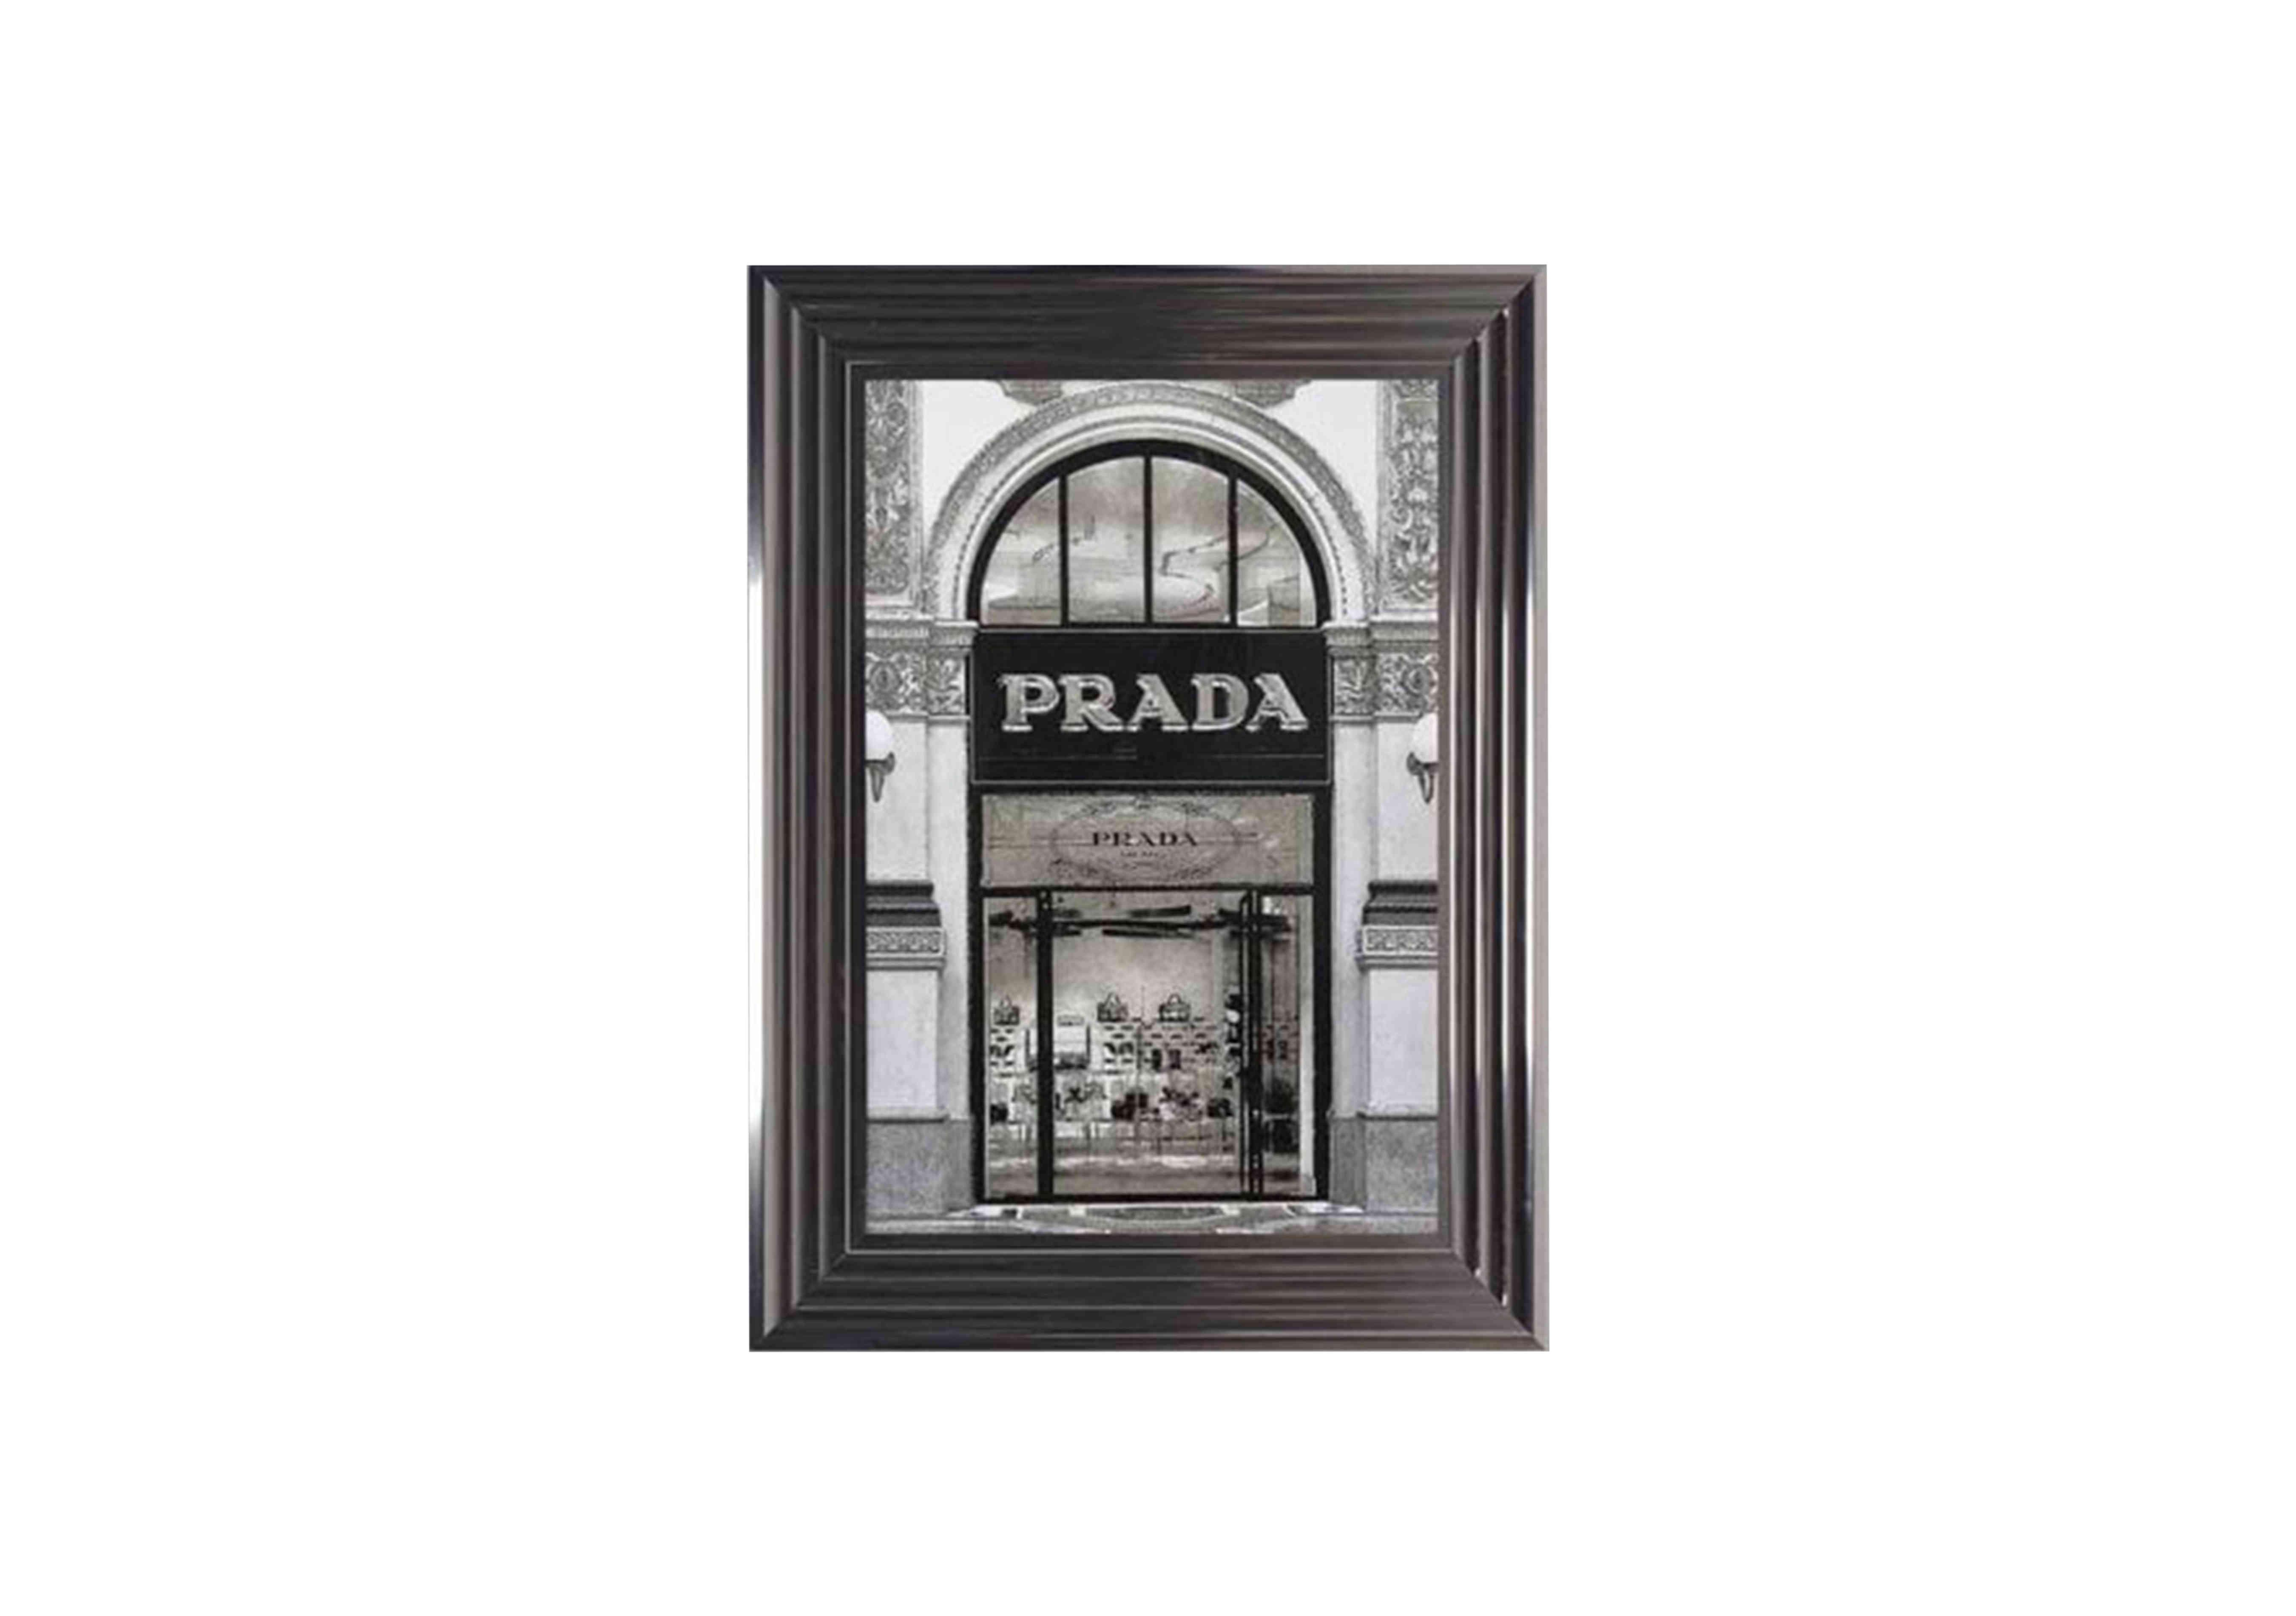 Prada Shop Front Framed Art - Furniture Village